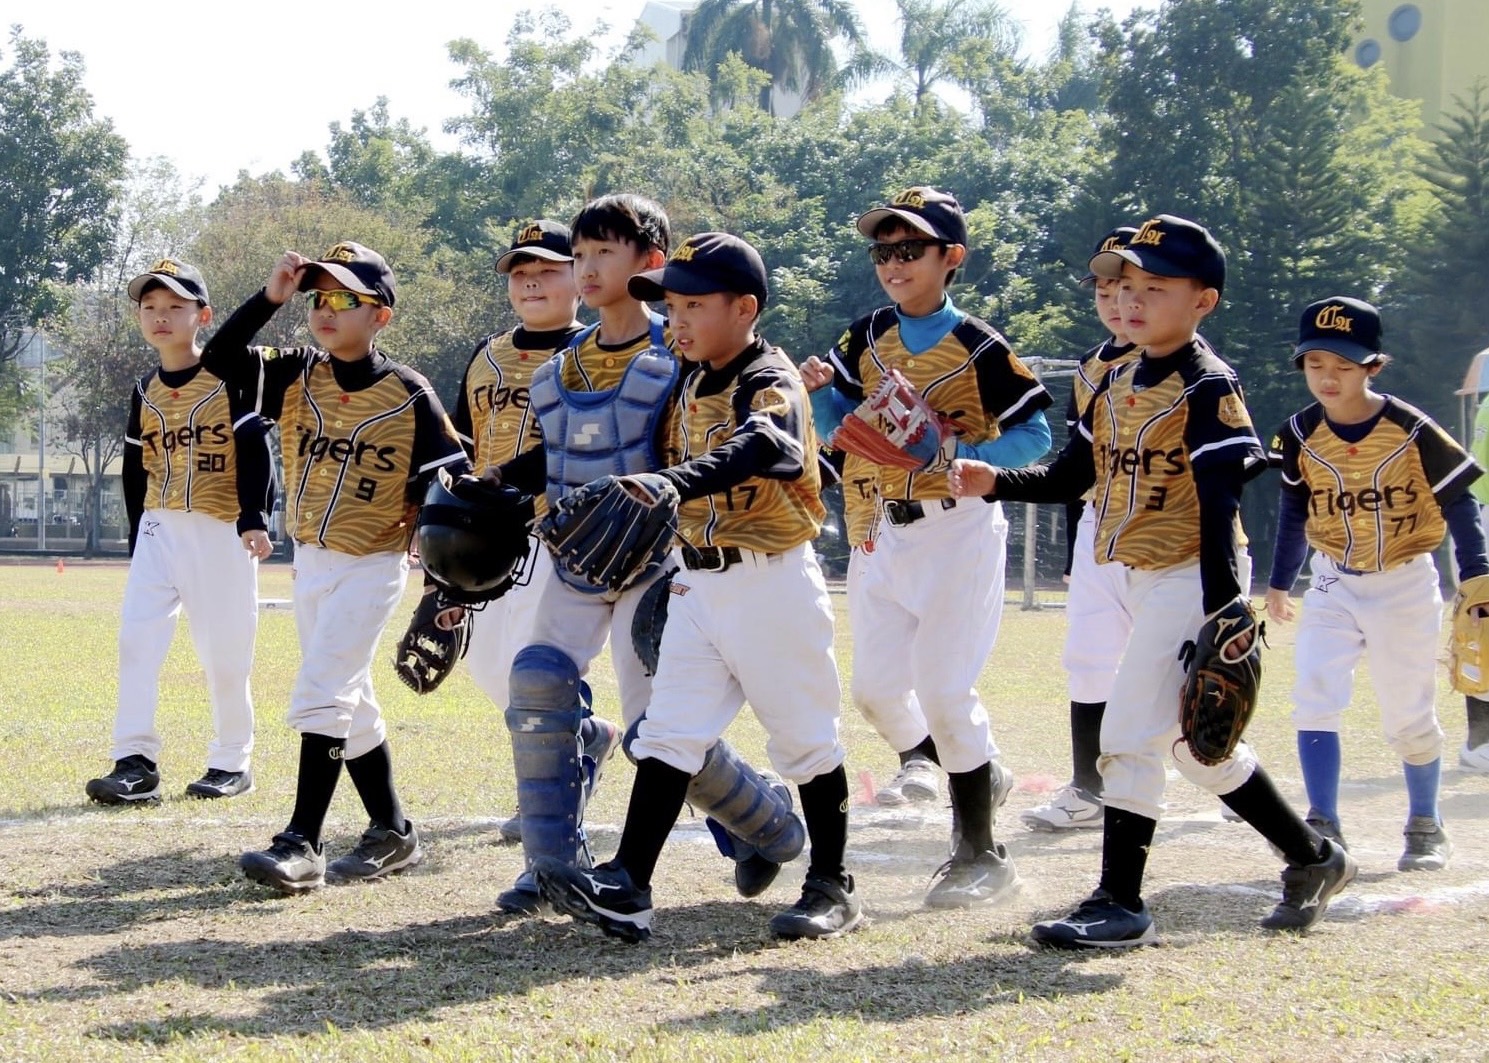 台中春安前進諸羅山盃國際軟式少年棒球邀請賽低年級組20強。大會提供